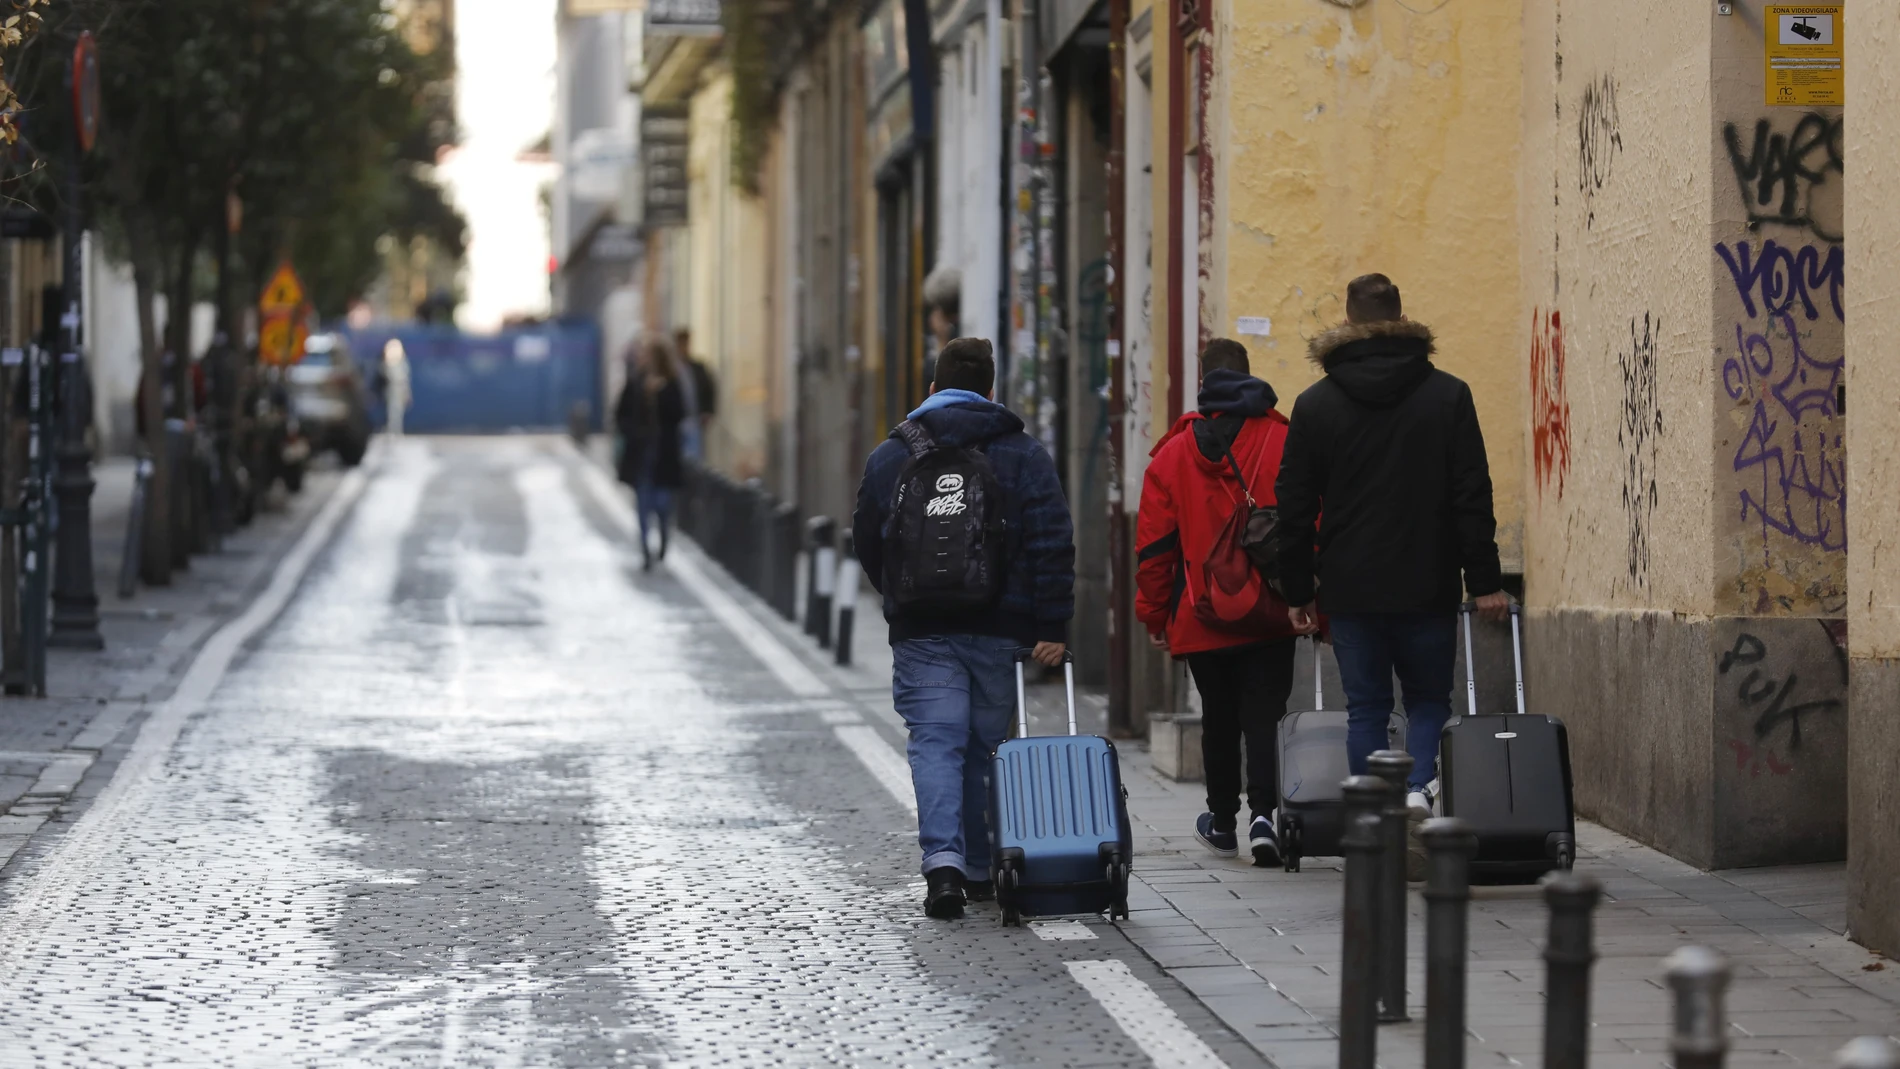 Madrid, barrio de Malasaña. Imágenes de gente con maletas por el barrio de Malasaña hacia los pisos turísticos